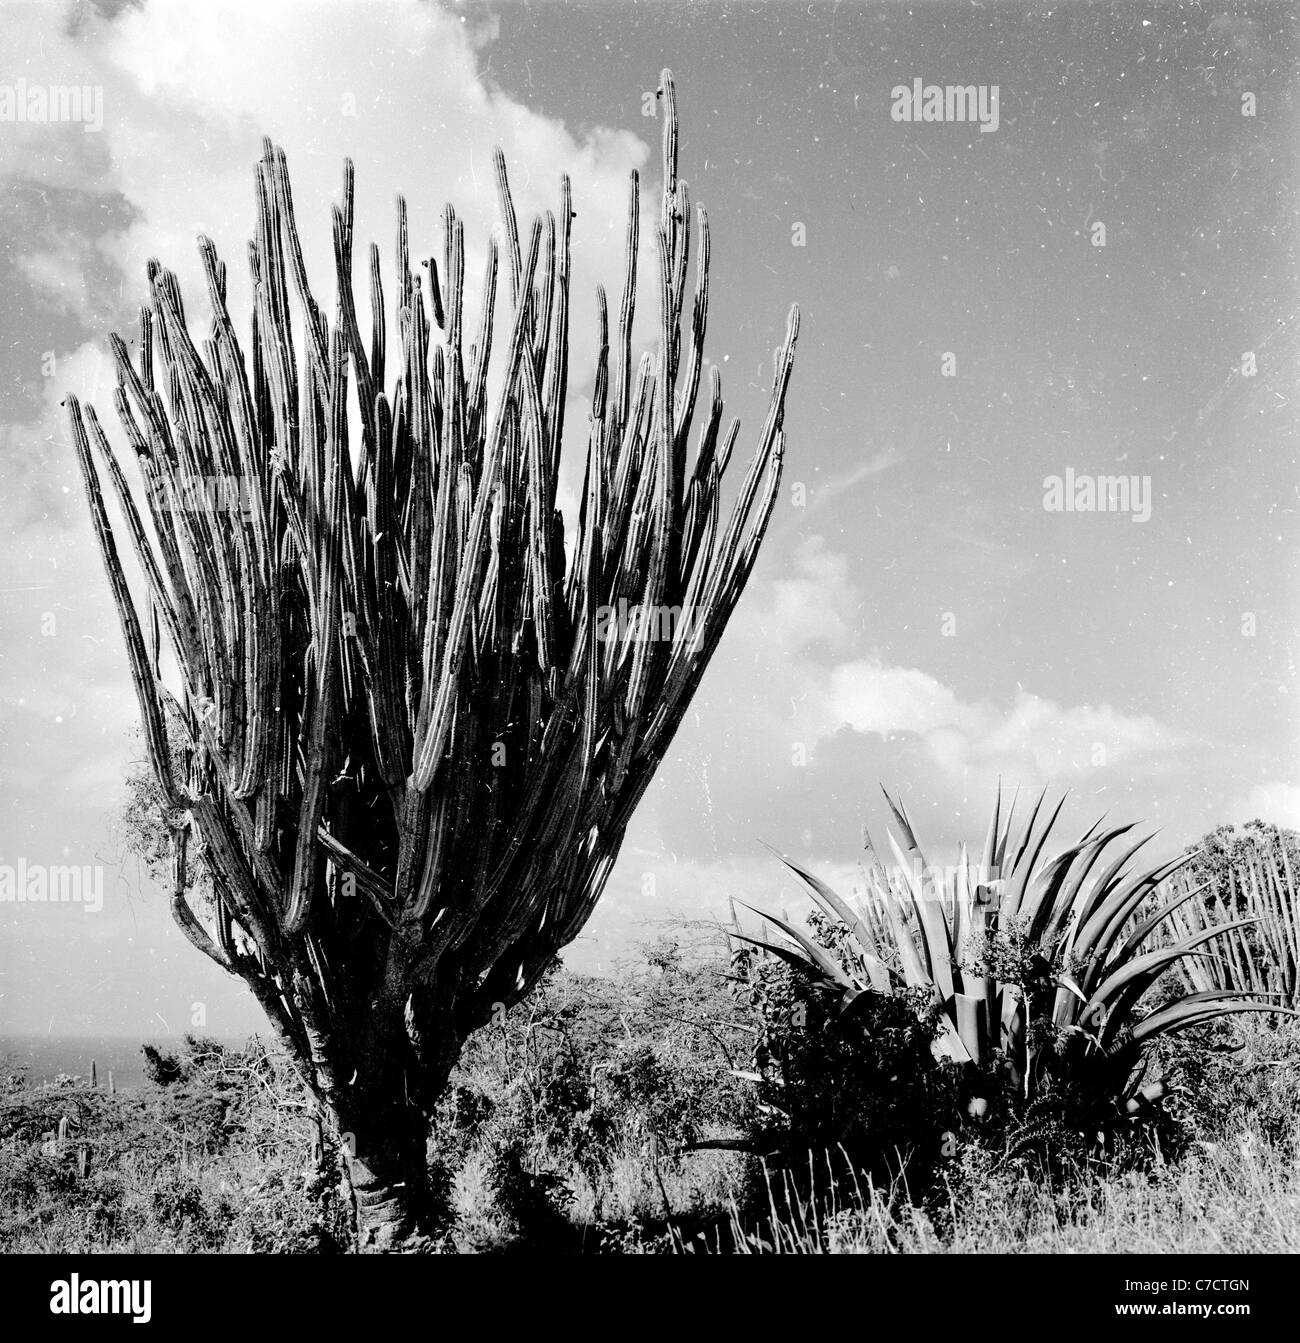 Années 1950 historiques. Cactus dans le jardin Exotique de Monaco, jardins botaniques ouverts en 1933 sur les collines dont le cactus est la famille principale. Banque D'Images